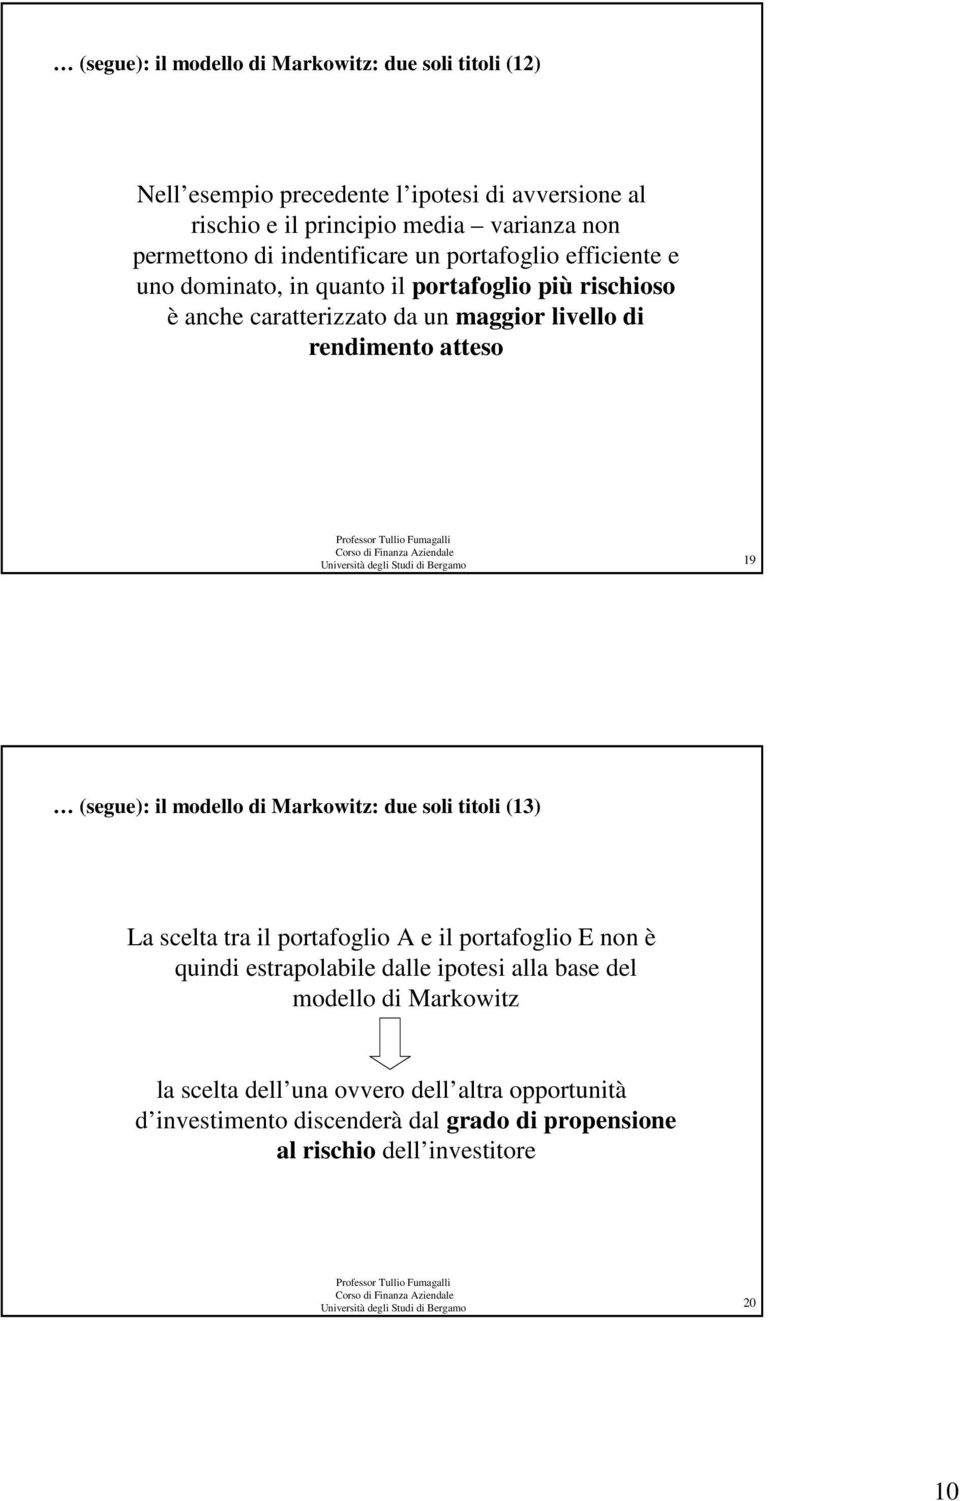 Bergamo 9 (segue): l modello d Markowtz: due sol ttol (3) La scelta tra l portafoglo A e l portafoglo E non è qund estrapolable dalle potes alla base del